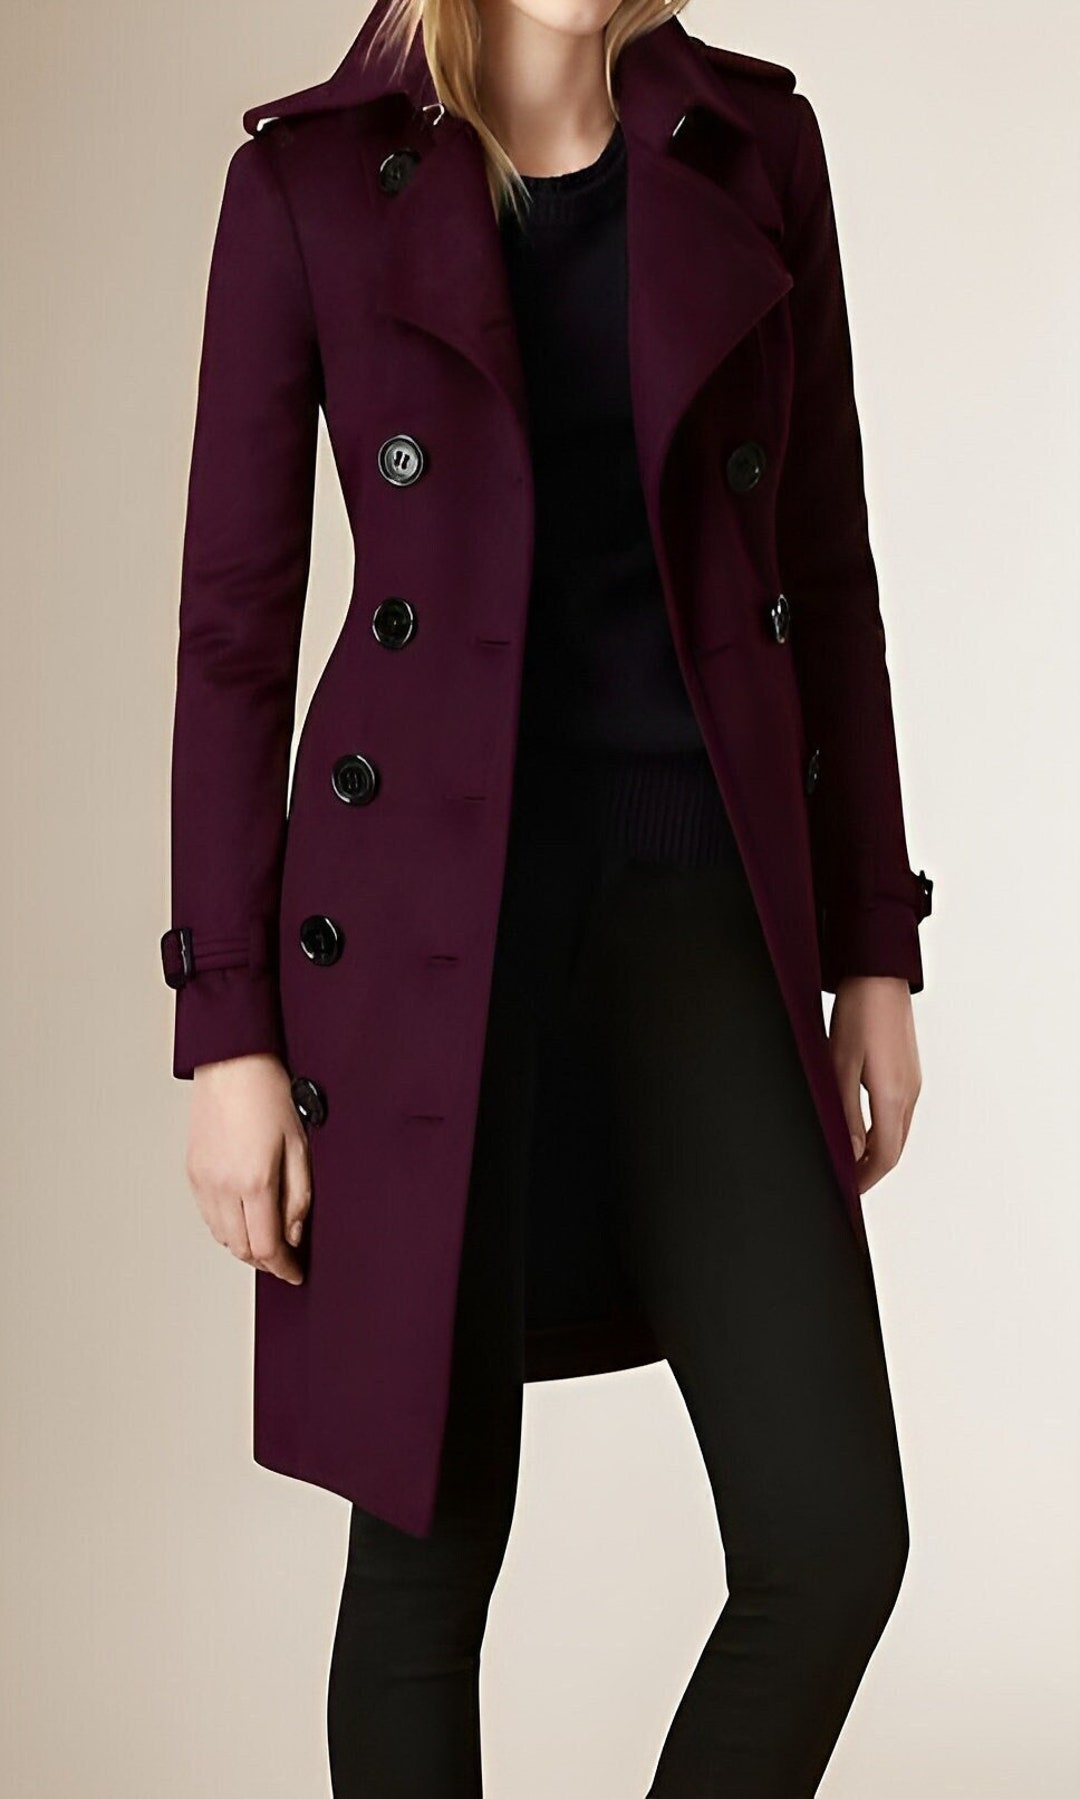 Burgundy Trench Coat for Women Long Coat for Girls Gift for Girlfriend ...